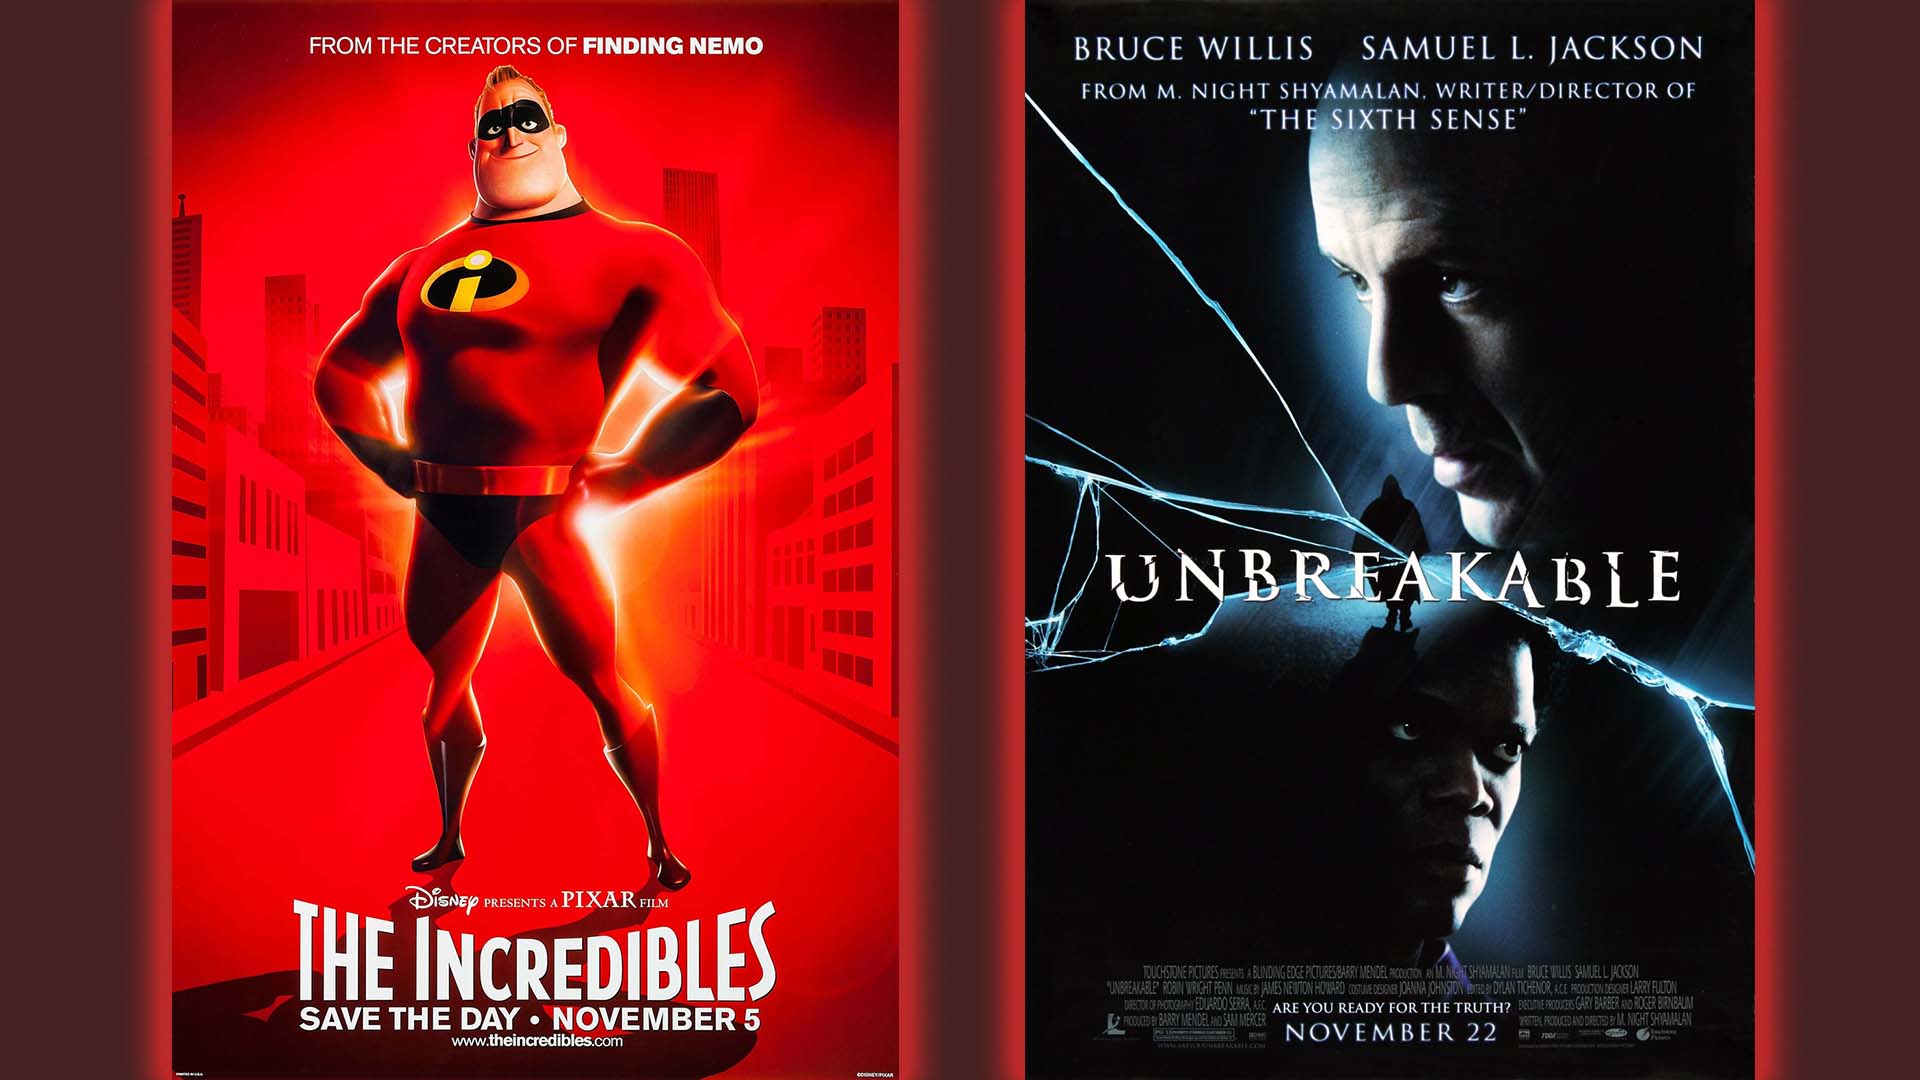 Superhero Movie Posters